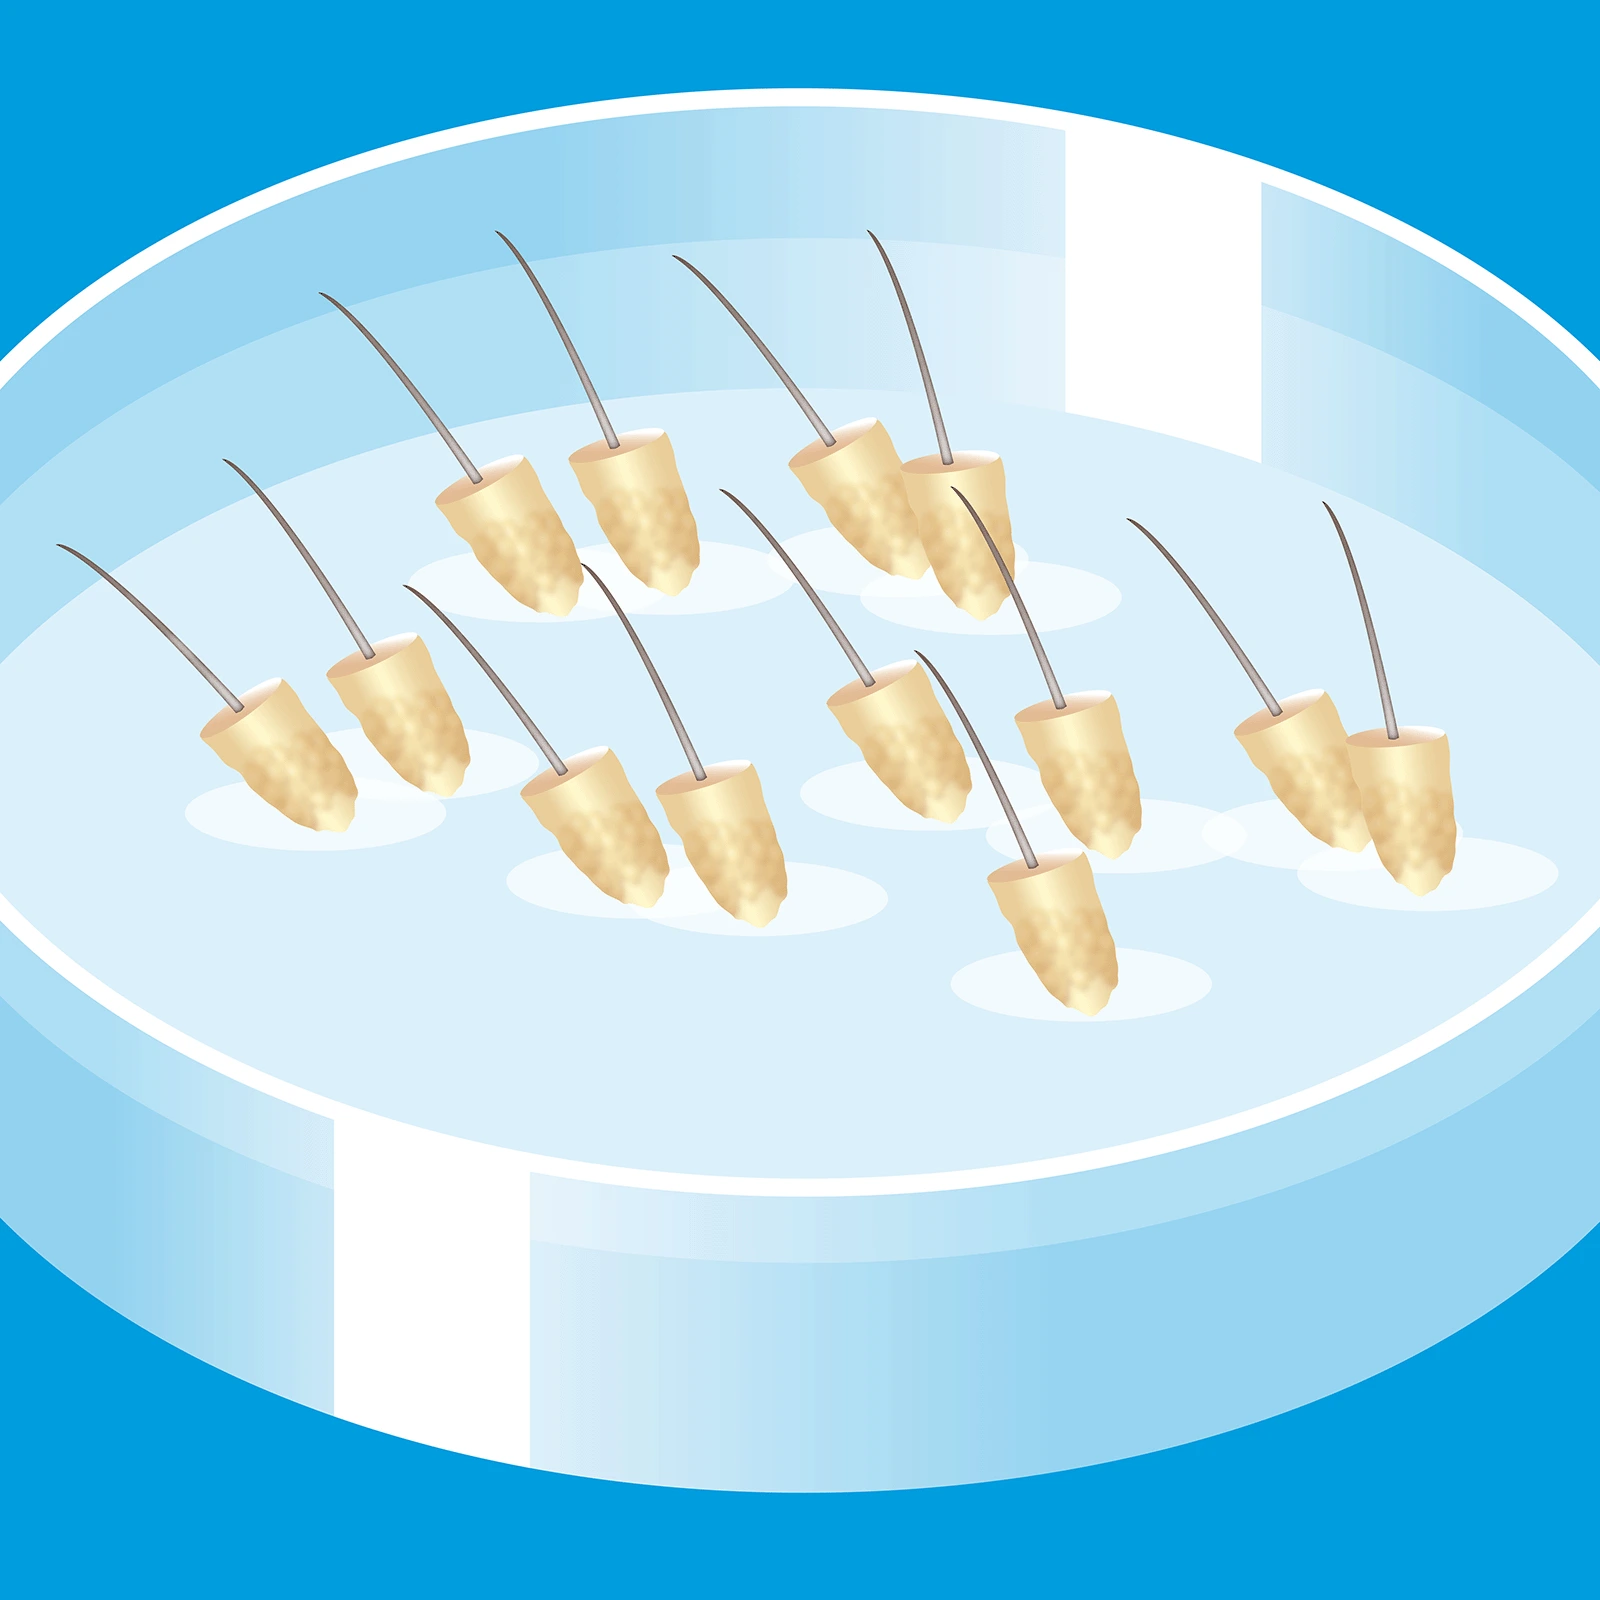 Schritt 5 der Haartransplantation: Grafik einer Petrischale mit Nährlösungm worin die extrahierten Grafts, die Haare, eingelagert sind, bevor sie implantiert werden